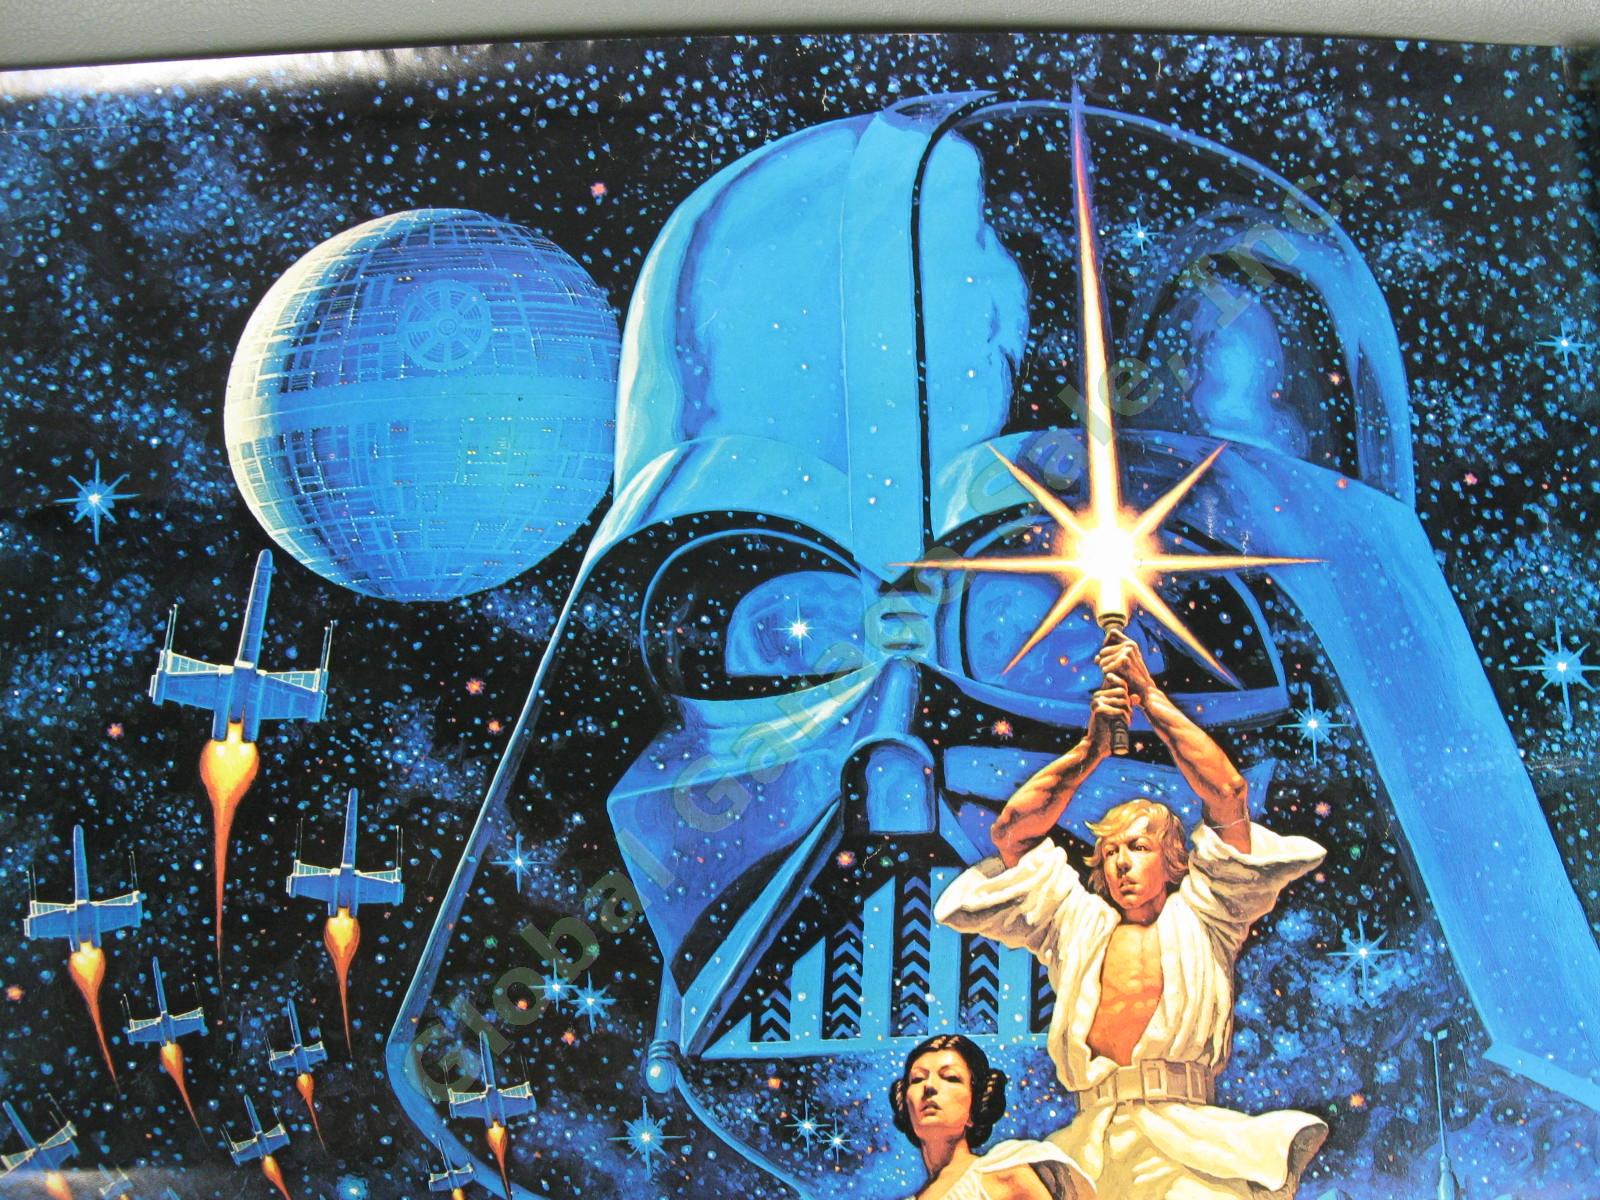 ORIGINAL 1977 Star Wars New Hope Hildebrandt 20th Century Fox Film Poster 28x20" 1